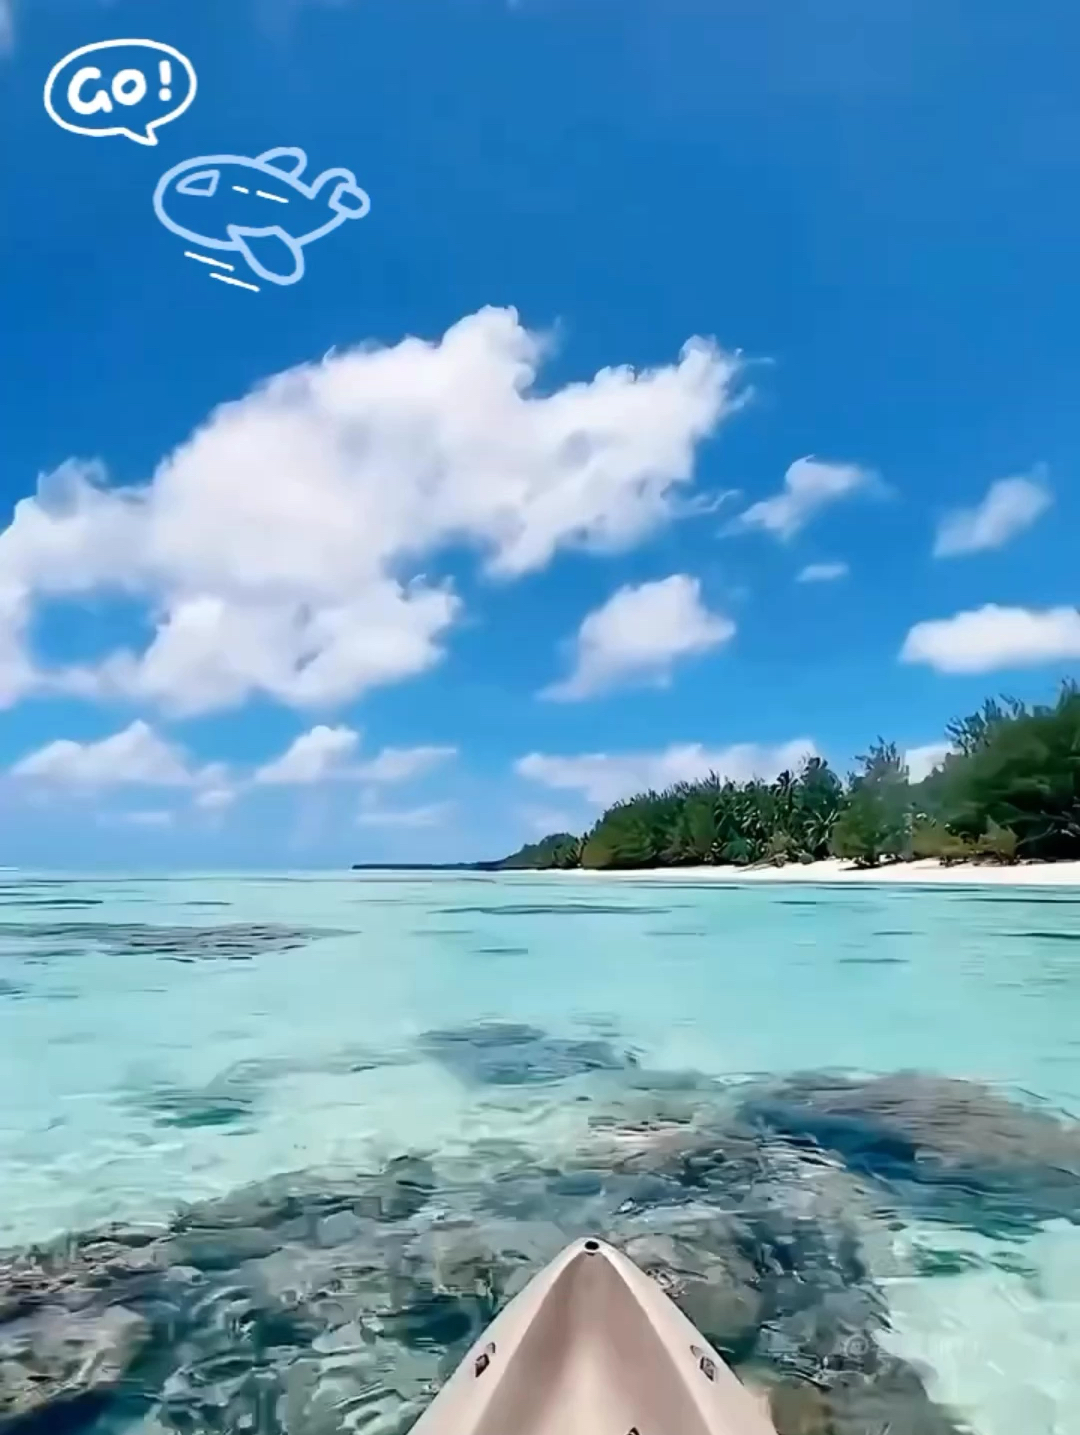 这里是唯一没有被污染的海洋沙滩——库克群岛